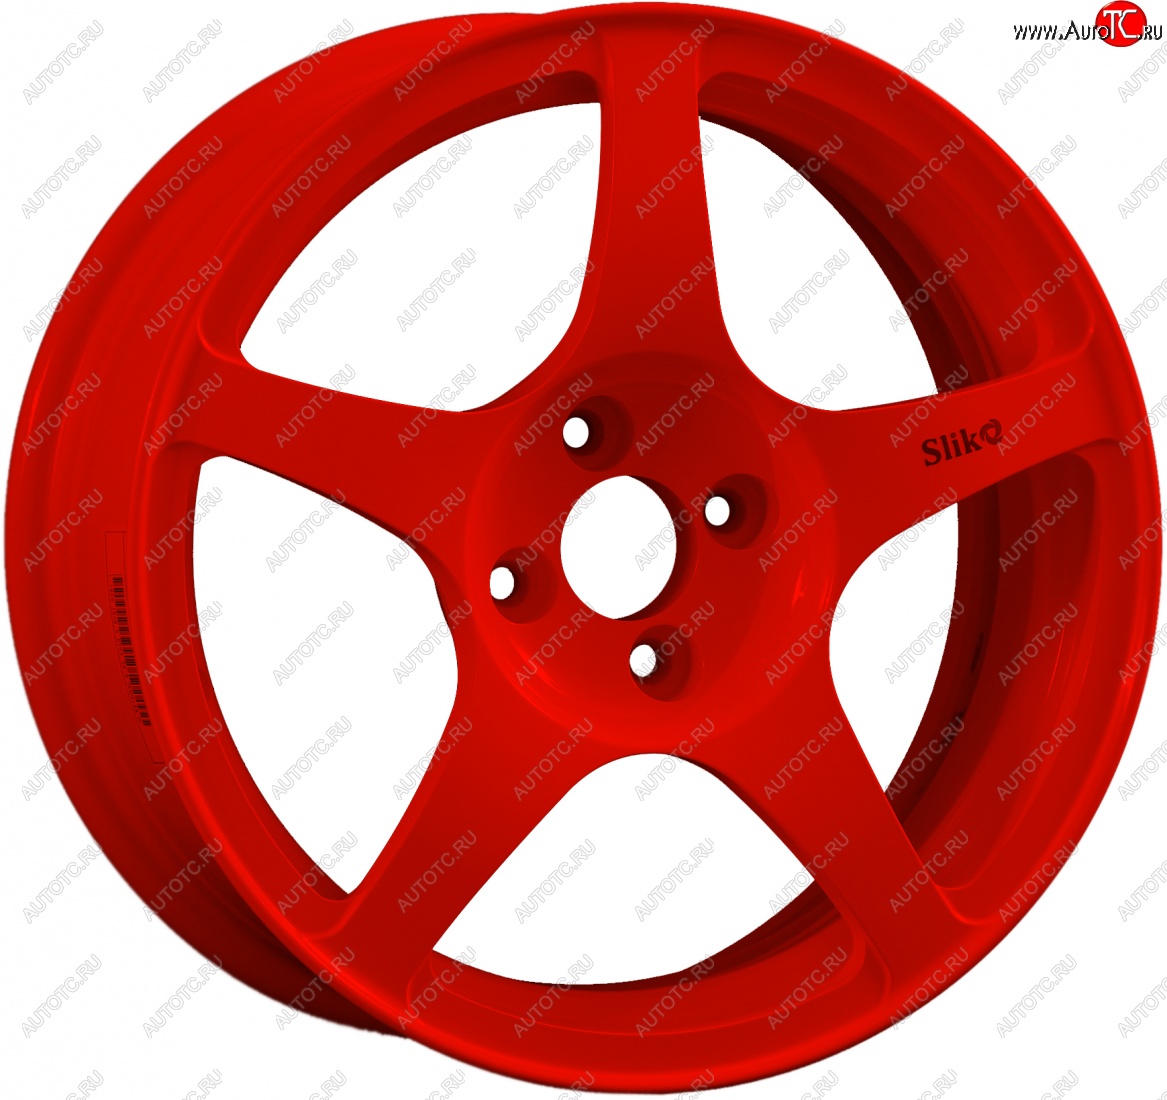 10 349 р. Кованый диск Slik classik R16x6.5 Красный (RED) 6.5x16 Hyundai I30 FD универсал рестайлинг (2010-2012) 5x114.3xDIA67.1xET47.0 (Цвет: RED)